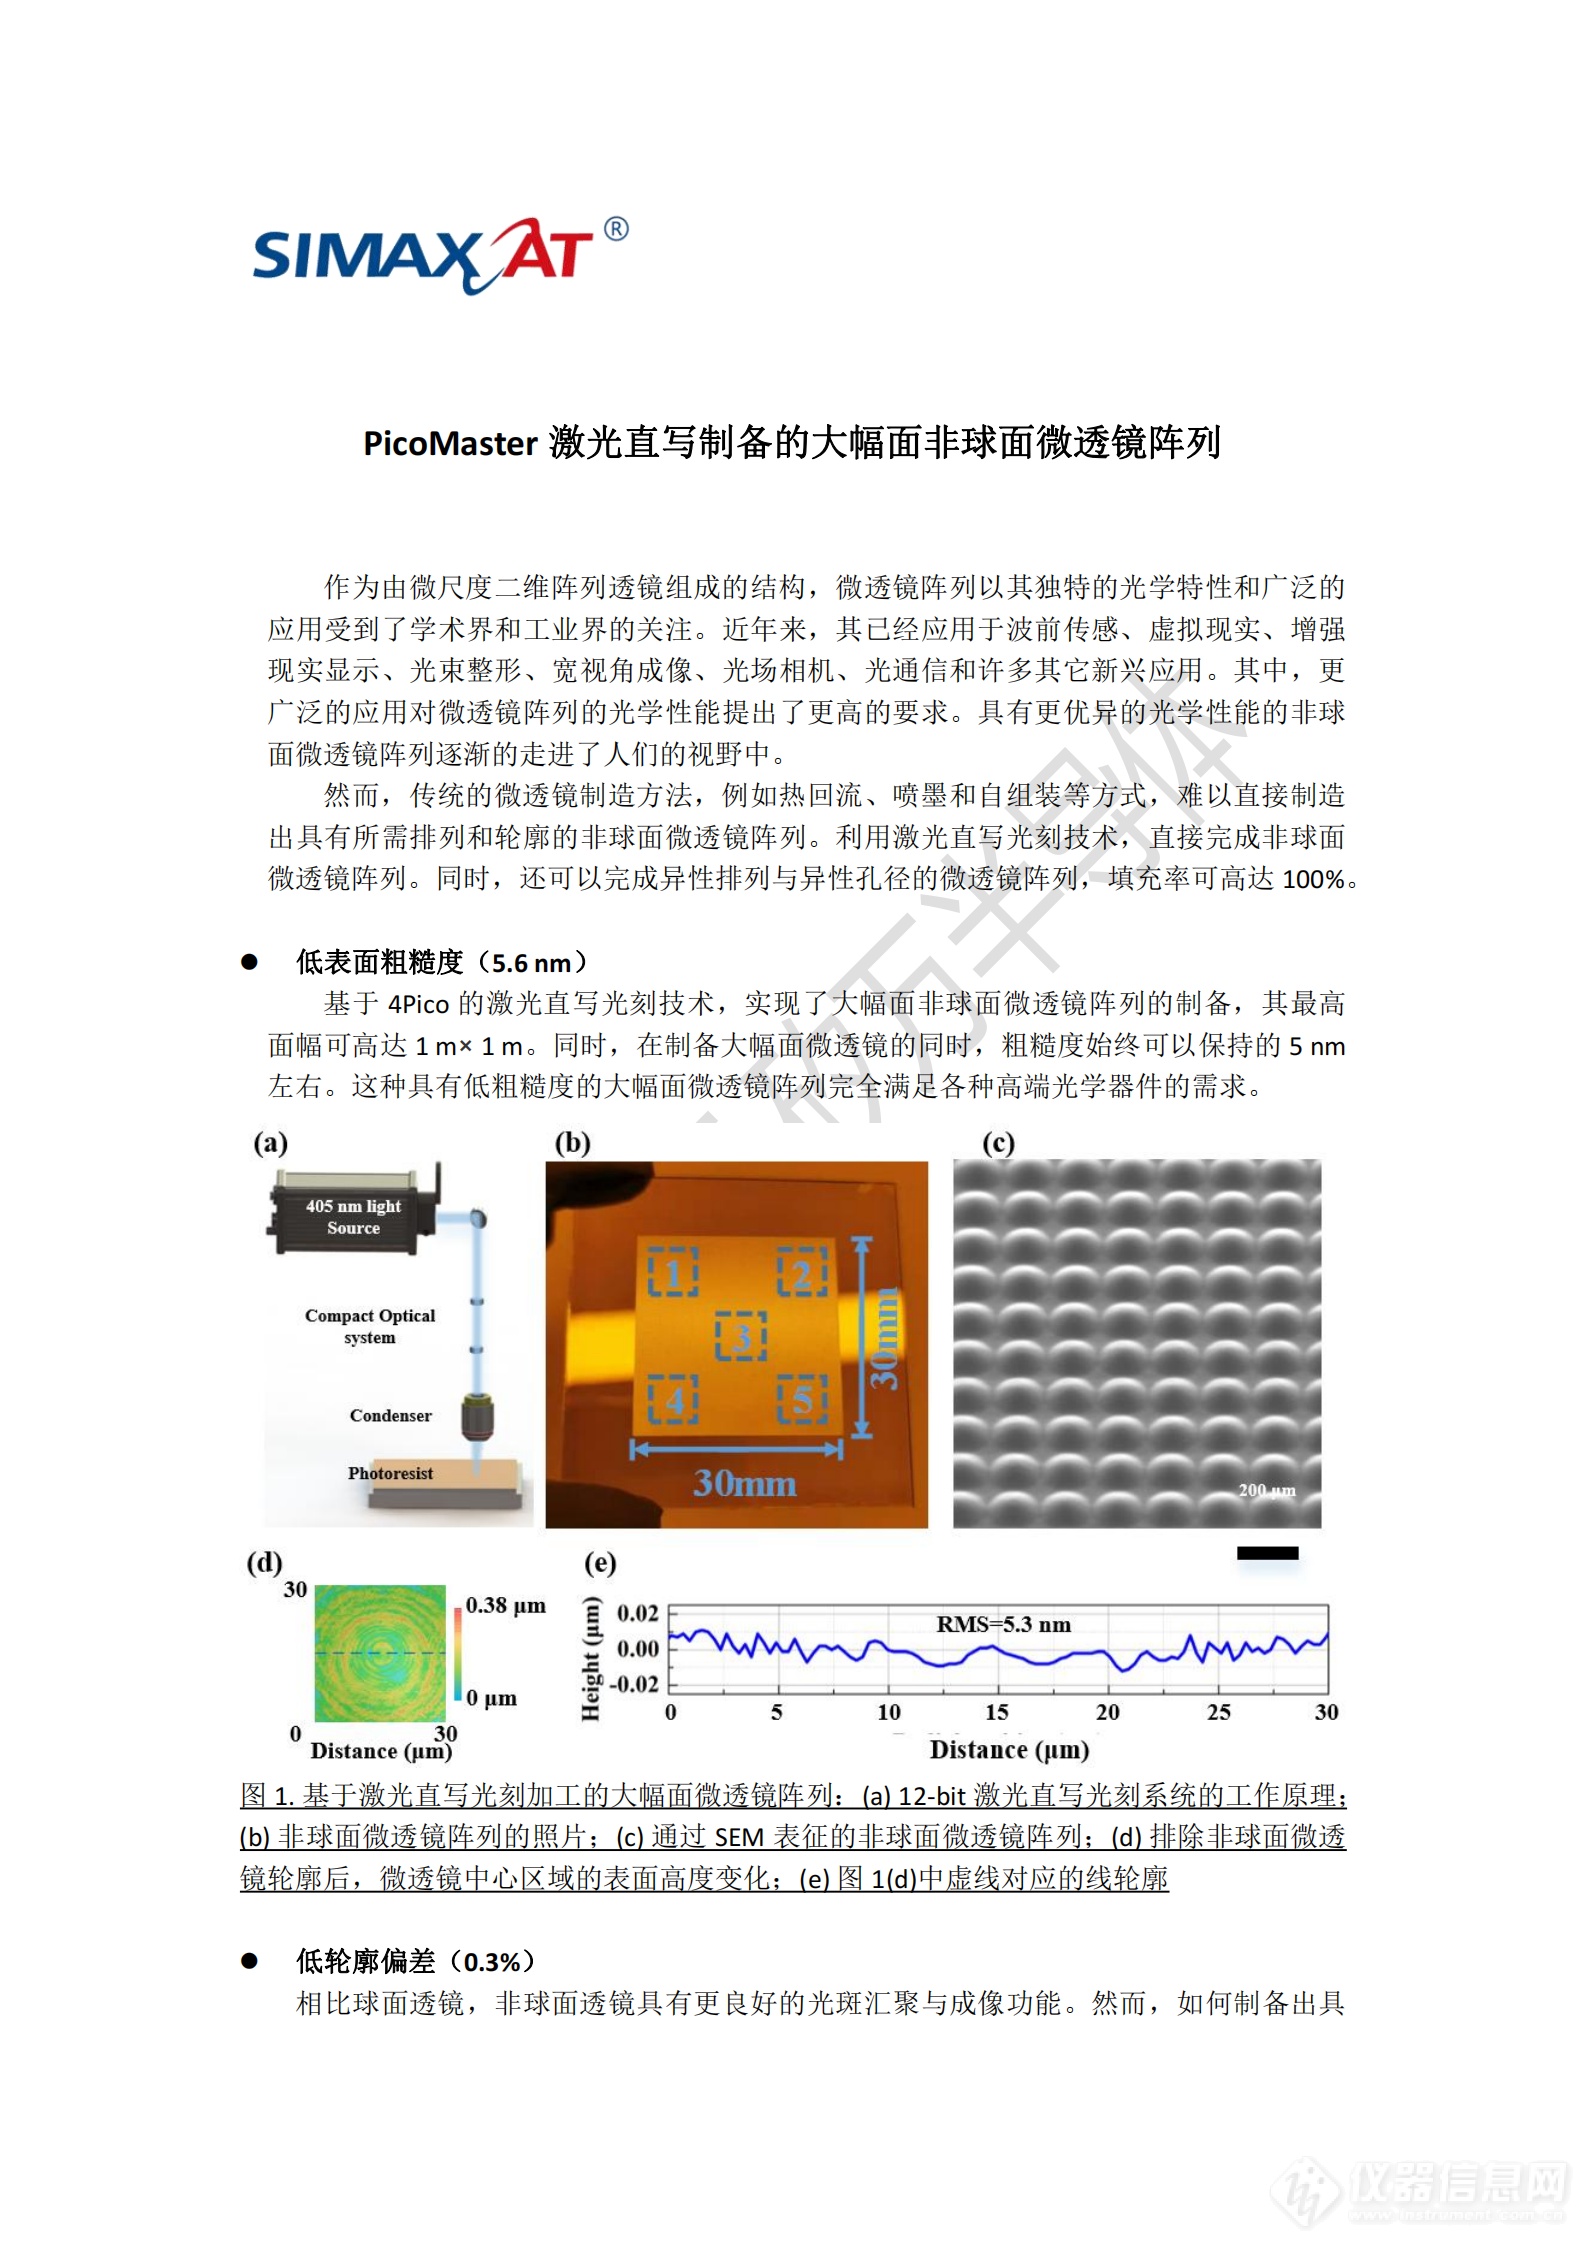 PicoMaster激光直写制备的大幅面非球面微透镜阵列_00.png